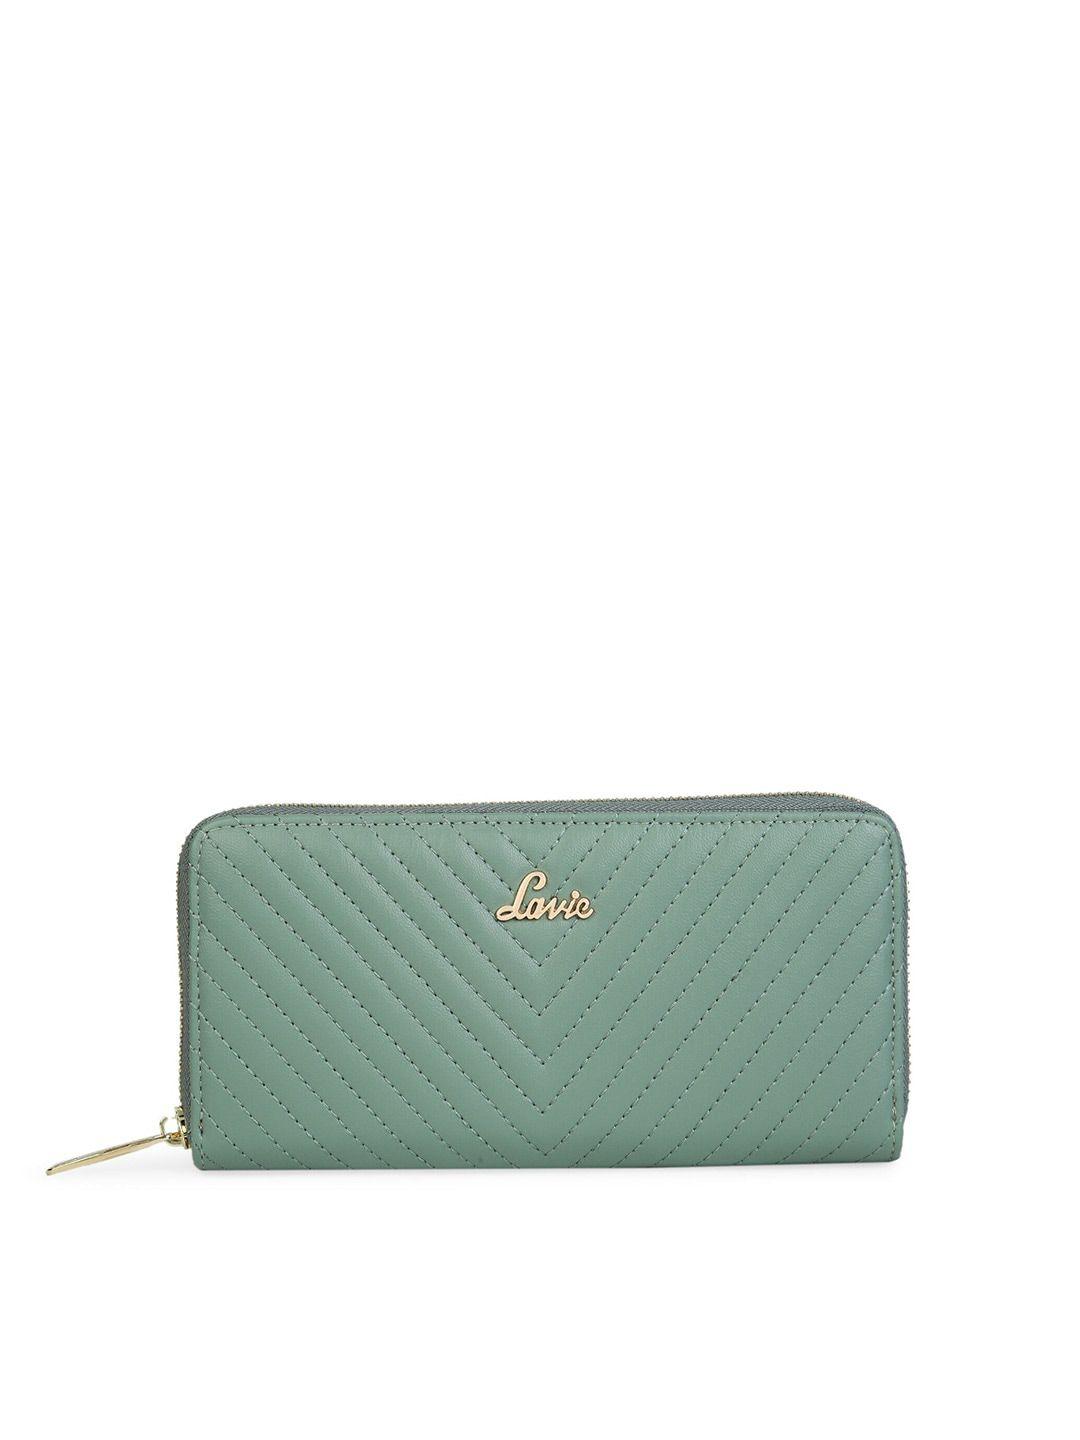 lavie-chevron-women-green-zip-around-wallet